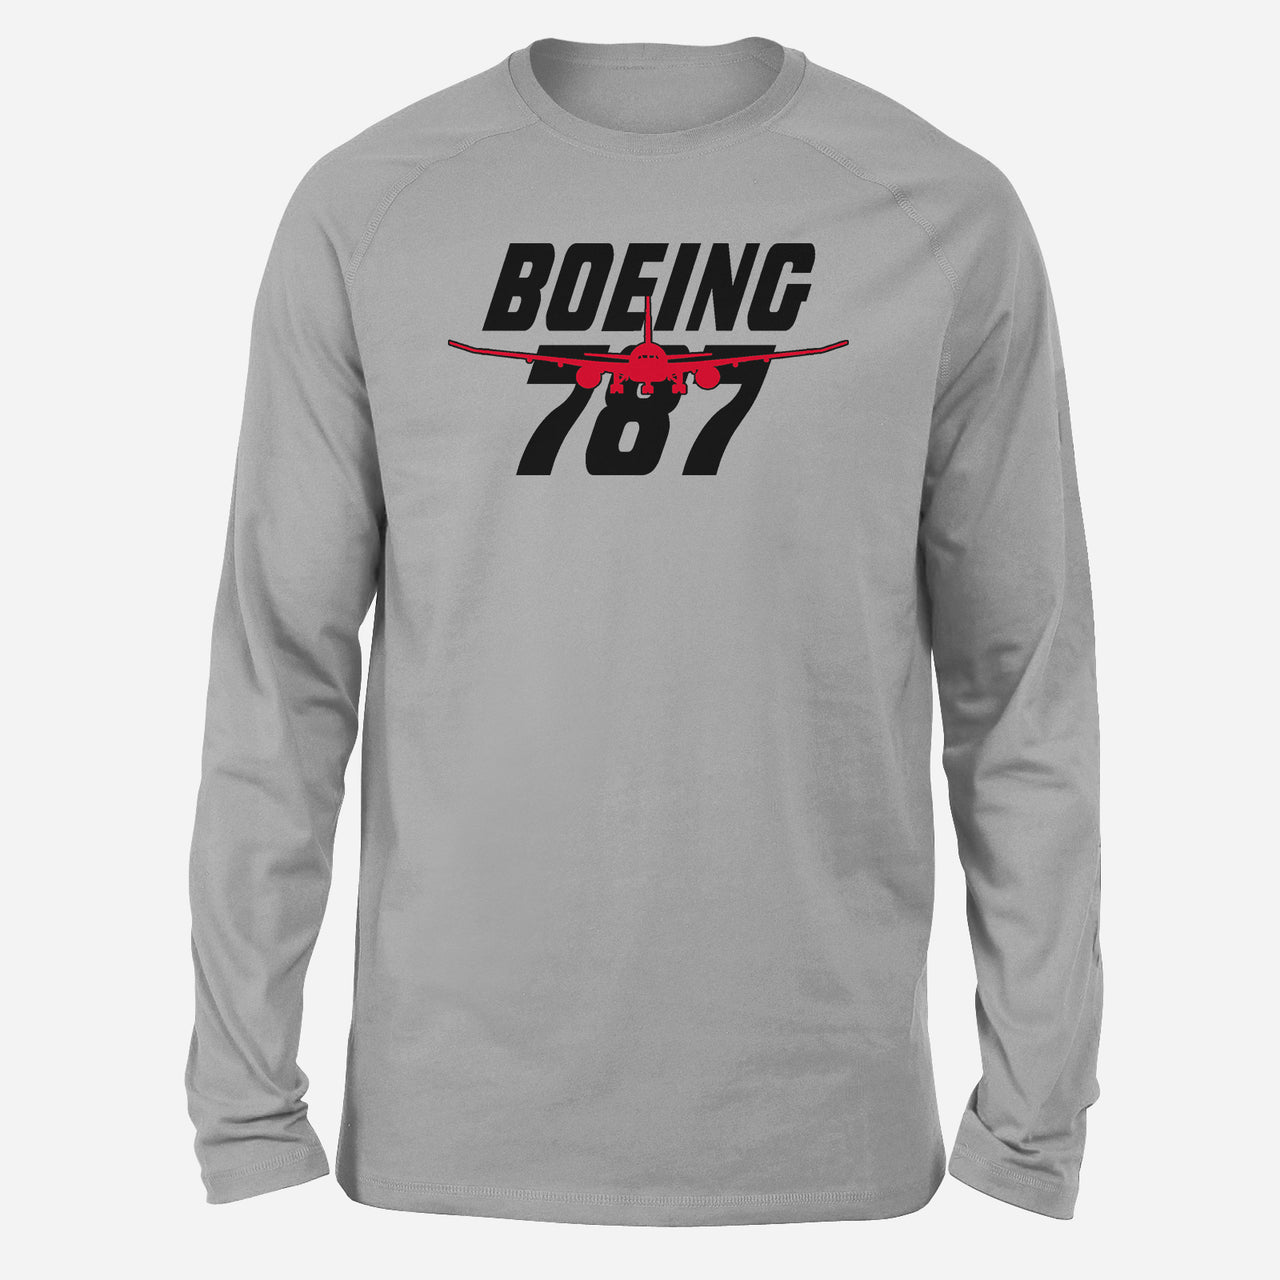 Amazing Boeing 787 Designed Long-Sleeve T-Shirts